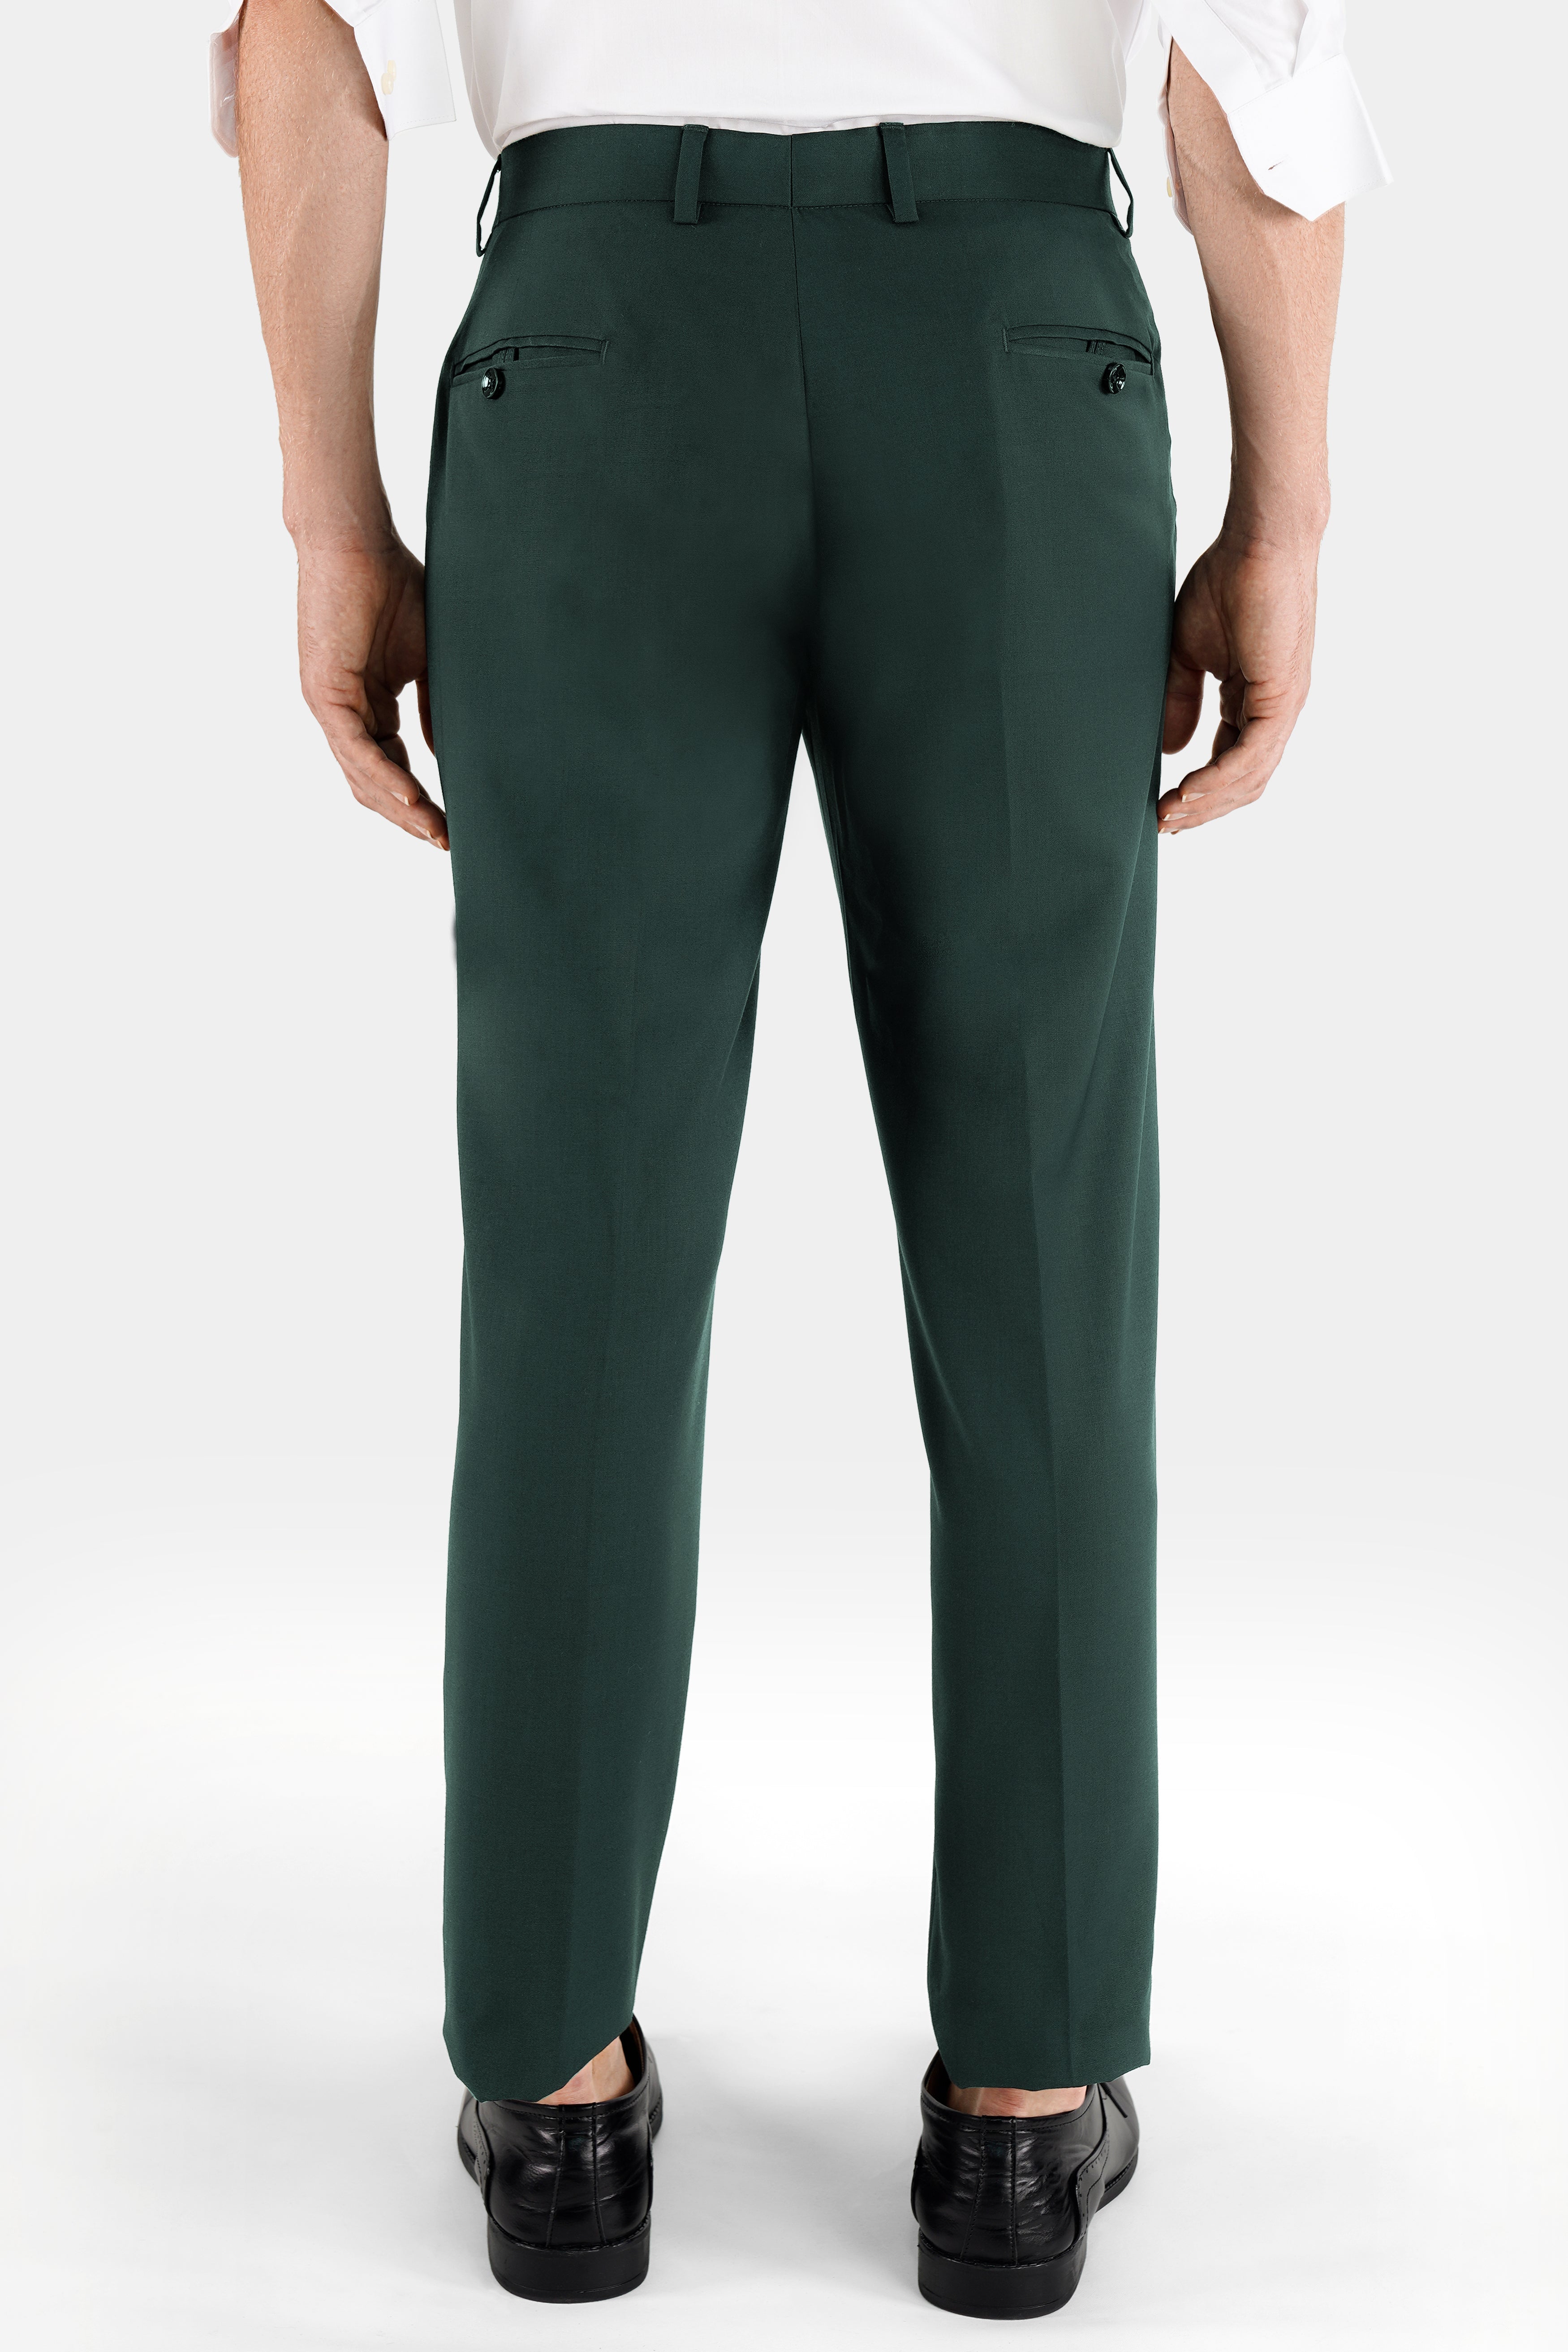 Green Formal Trouser For Women - Buy Green Formal Trouser For Women online  in India